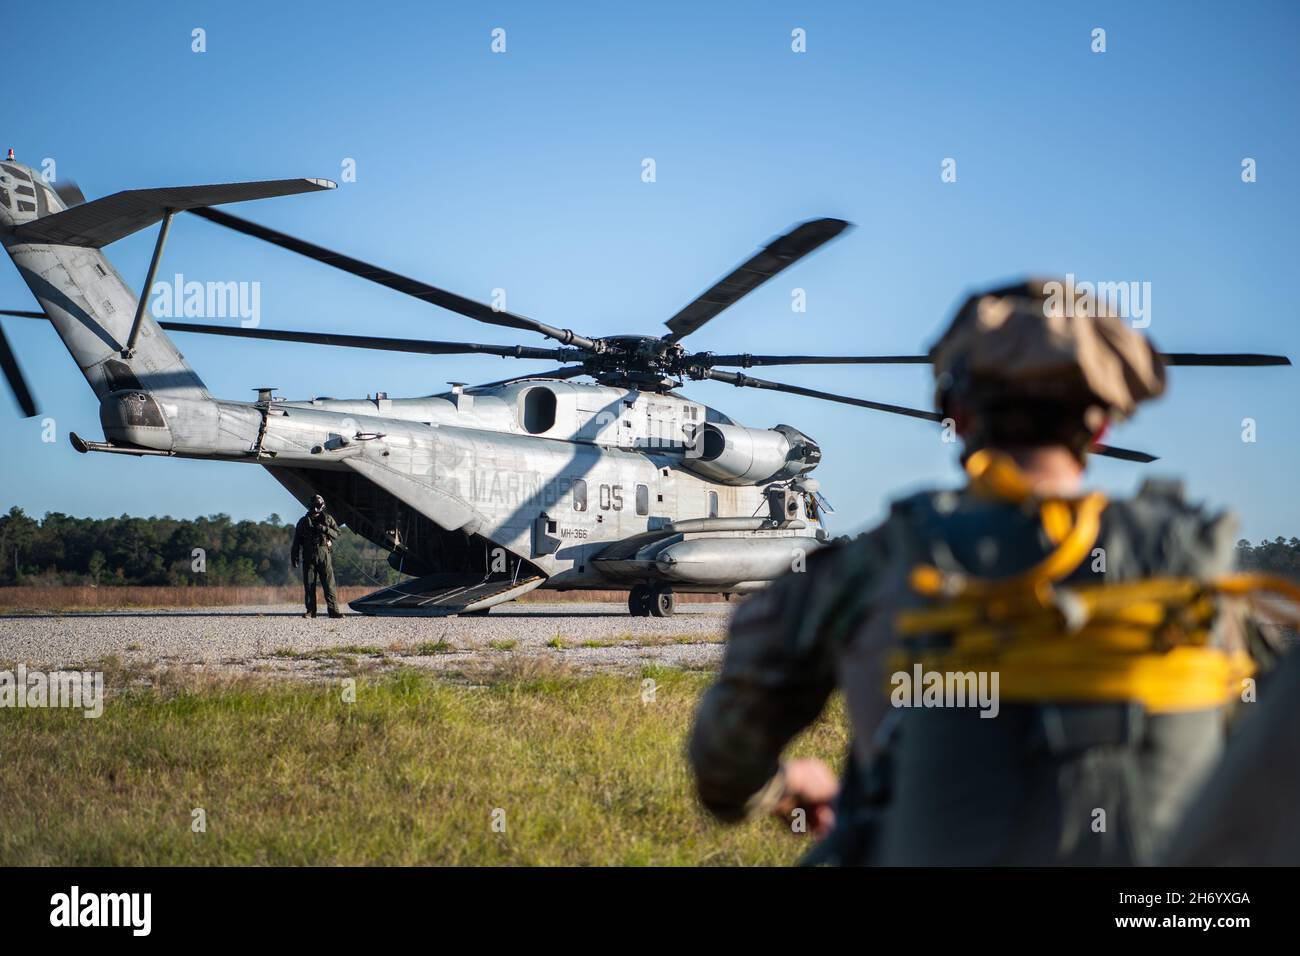 Un avión del Grupo de Defensa Base 820, ala de Operaciones Aéreas Terrestres 93d, se acerca a un helicóptero del Cuerpo de Marines CH-53 'Sea Stallion' en la Base de la Fuerza Aérea Moody, Georgia, 16 de noviembre de 2021. Los aviadores del Grupo de Defensa de la Base de 820, junto con los soldados de la Guardia Nacional del Ejército de Georgia y los miembros de la tripulación del helicóptero del Cuerpo de Infantería de Marina CH-53, realizaron operaciones aéreas de entrenamiento para intercambiar tácticas, técnicas y procedimientos de tres ramas del ejército y fortalecer capacidades conjuntas de misiones de empleo ágiles en combate. (EE.UU Foto de la Fuerza Aérea de 1st Lt. Katie Tamesis) Foto de stock